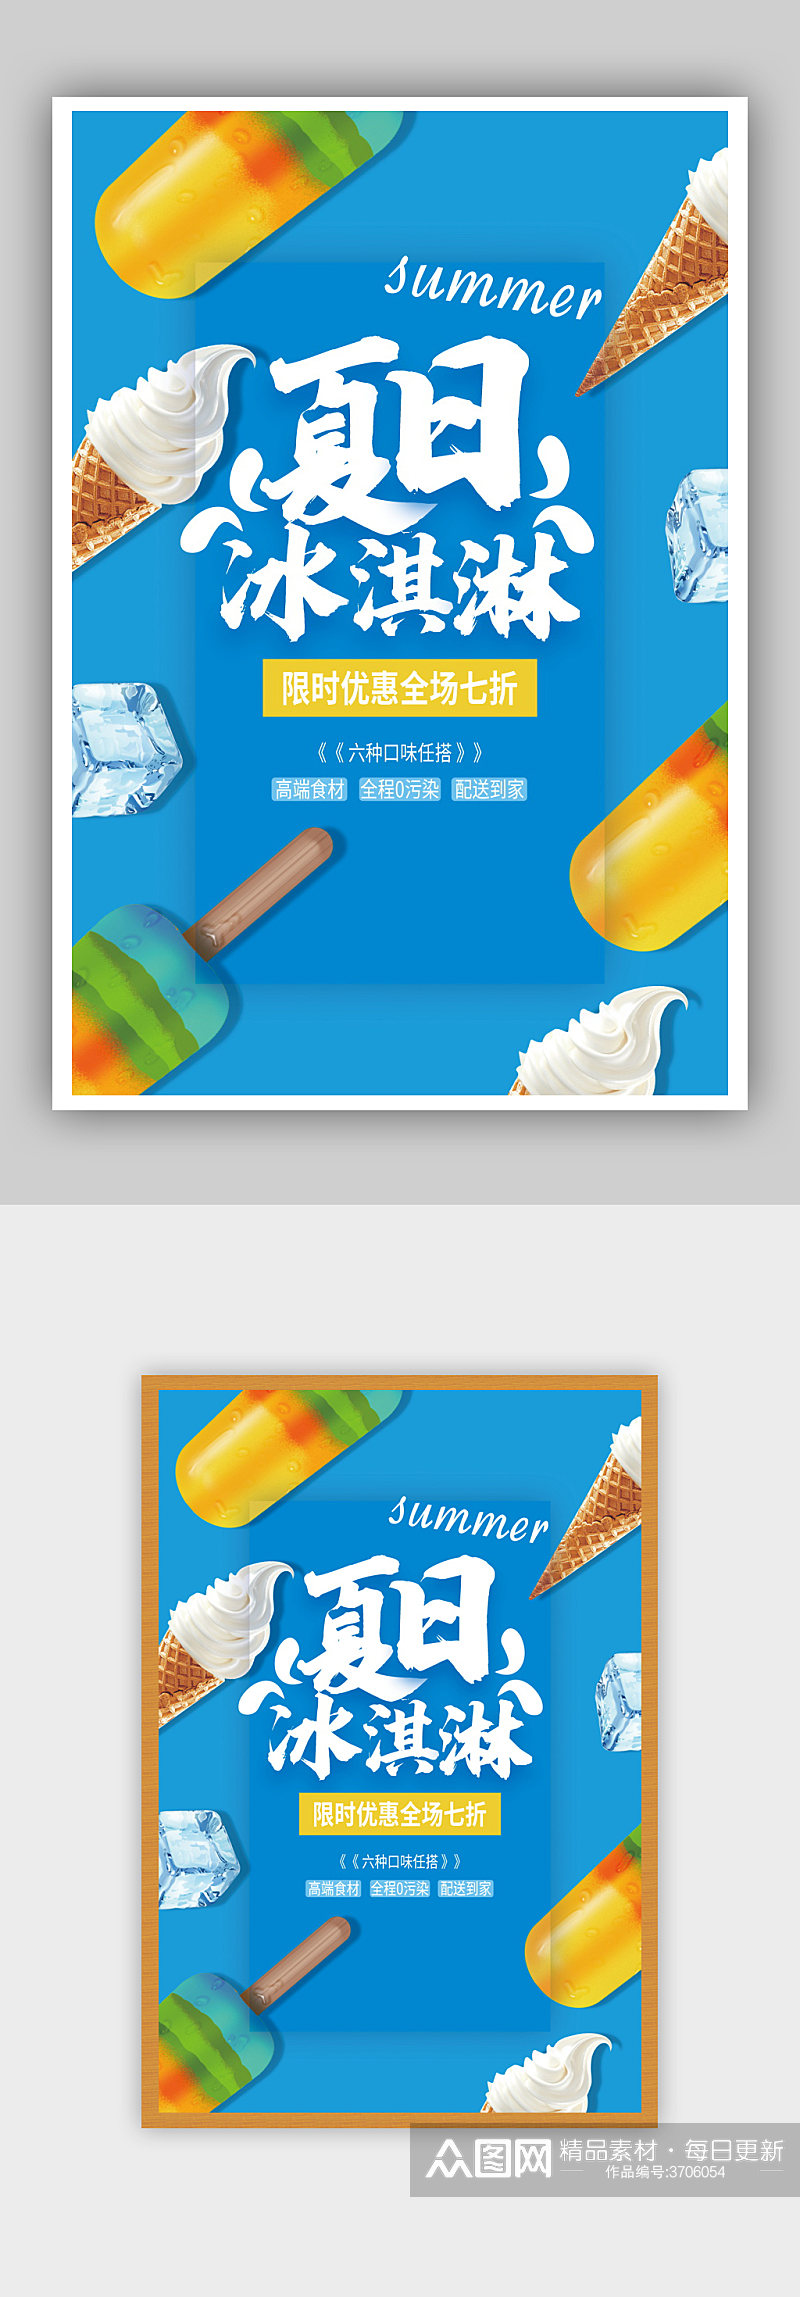 夏日冰淇淋促销海报素材